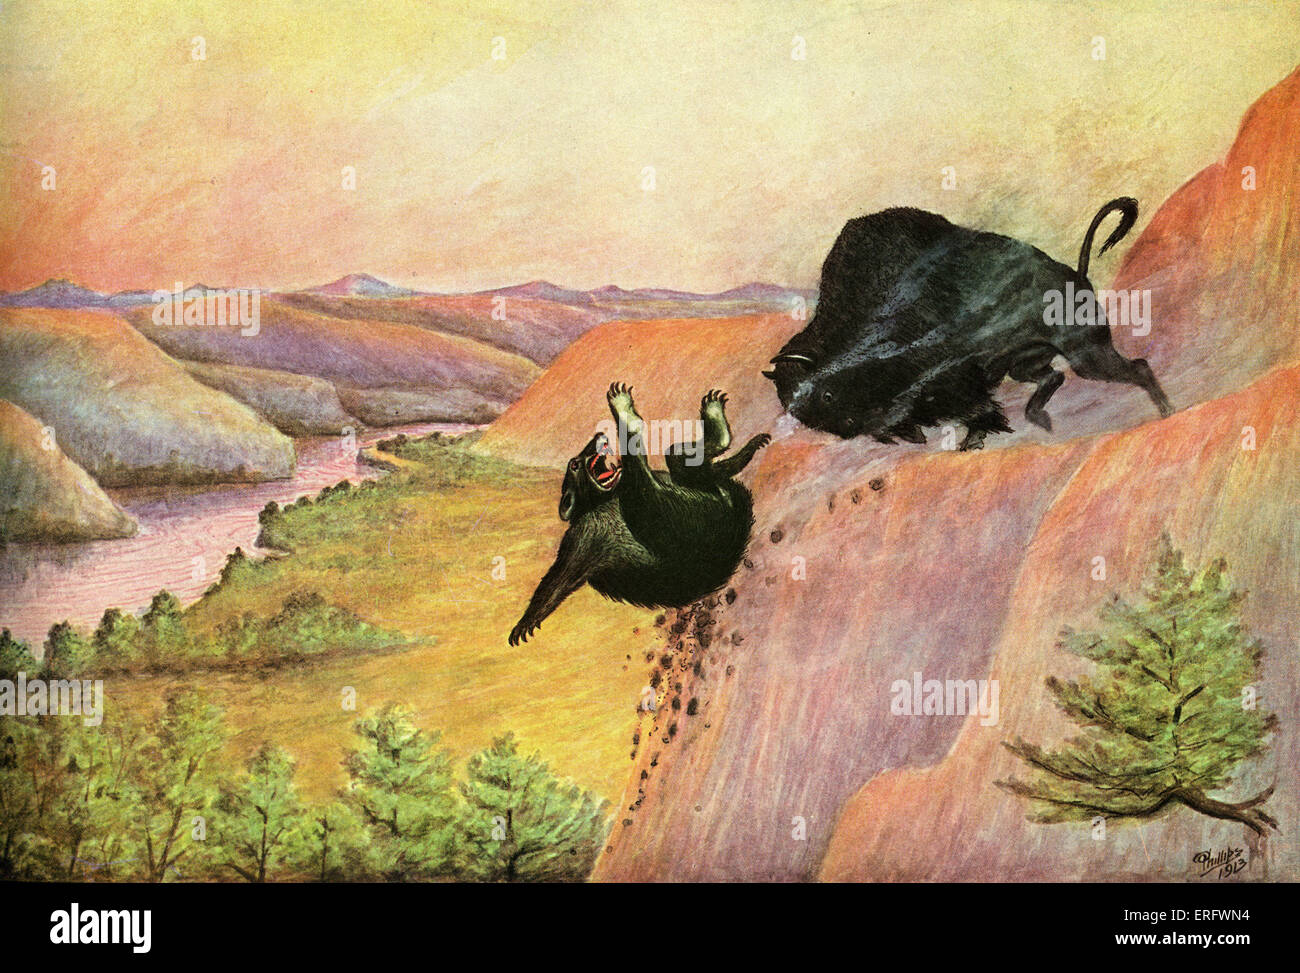 Indische Märchen für kleine Leute von W. S. Phillips (El Comancho 1867-1940). Abbildungen vom Autor. Angezeigt: Tragen und buffalo kämpfen auf Klippe. Volksmärchen. Stockfoto